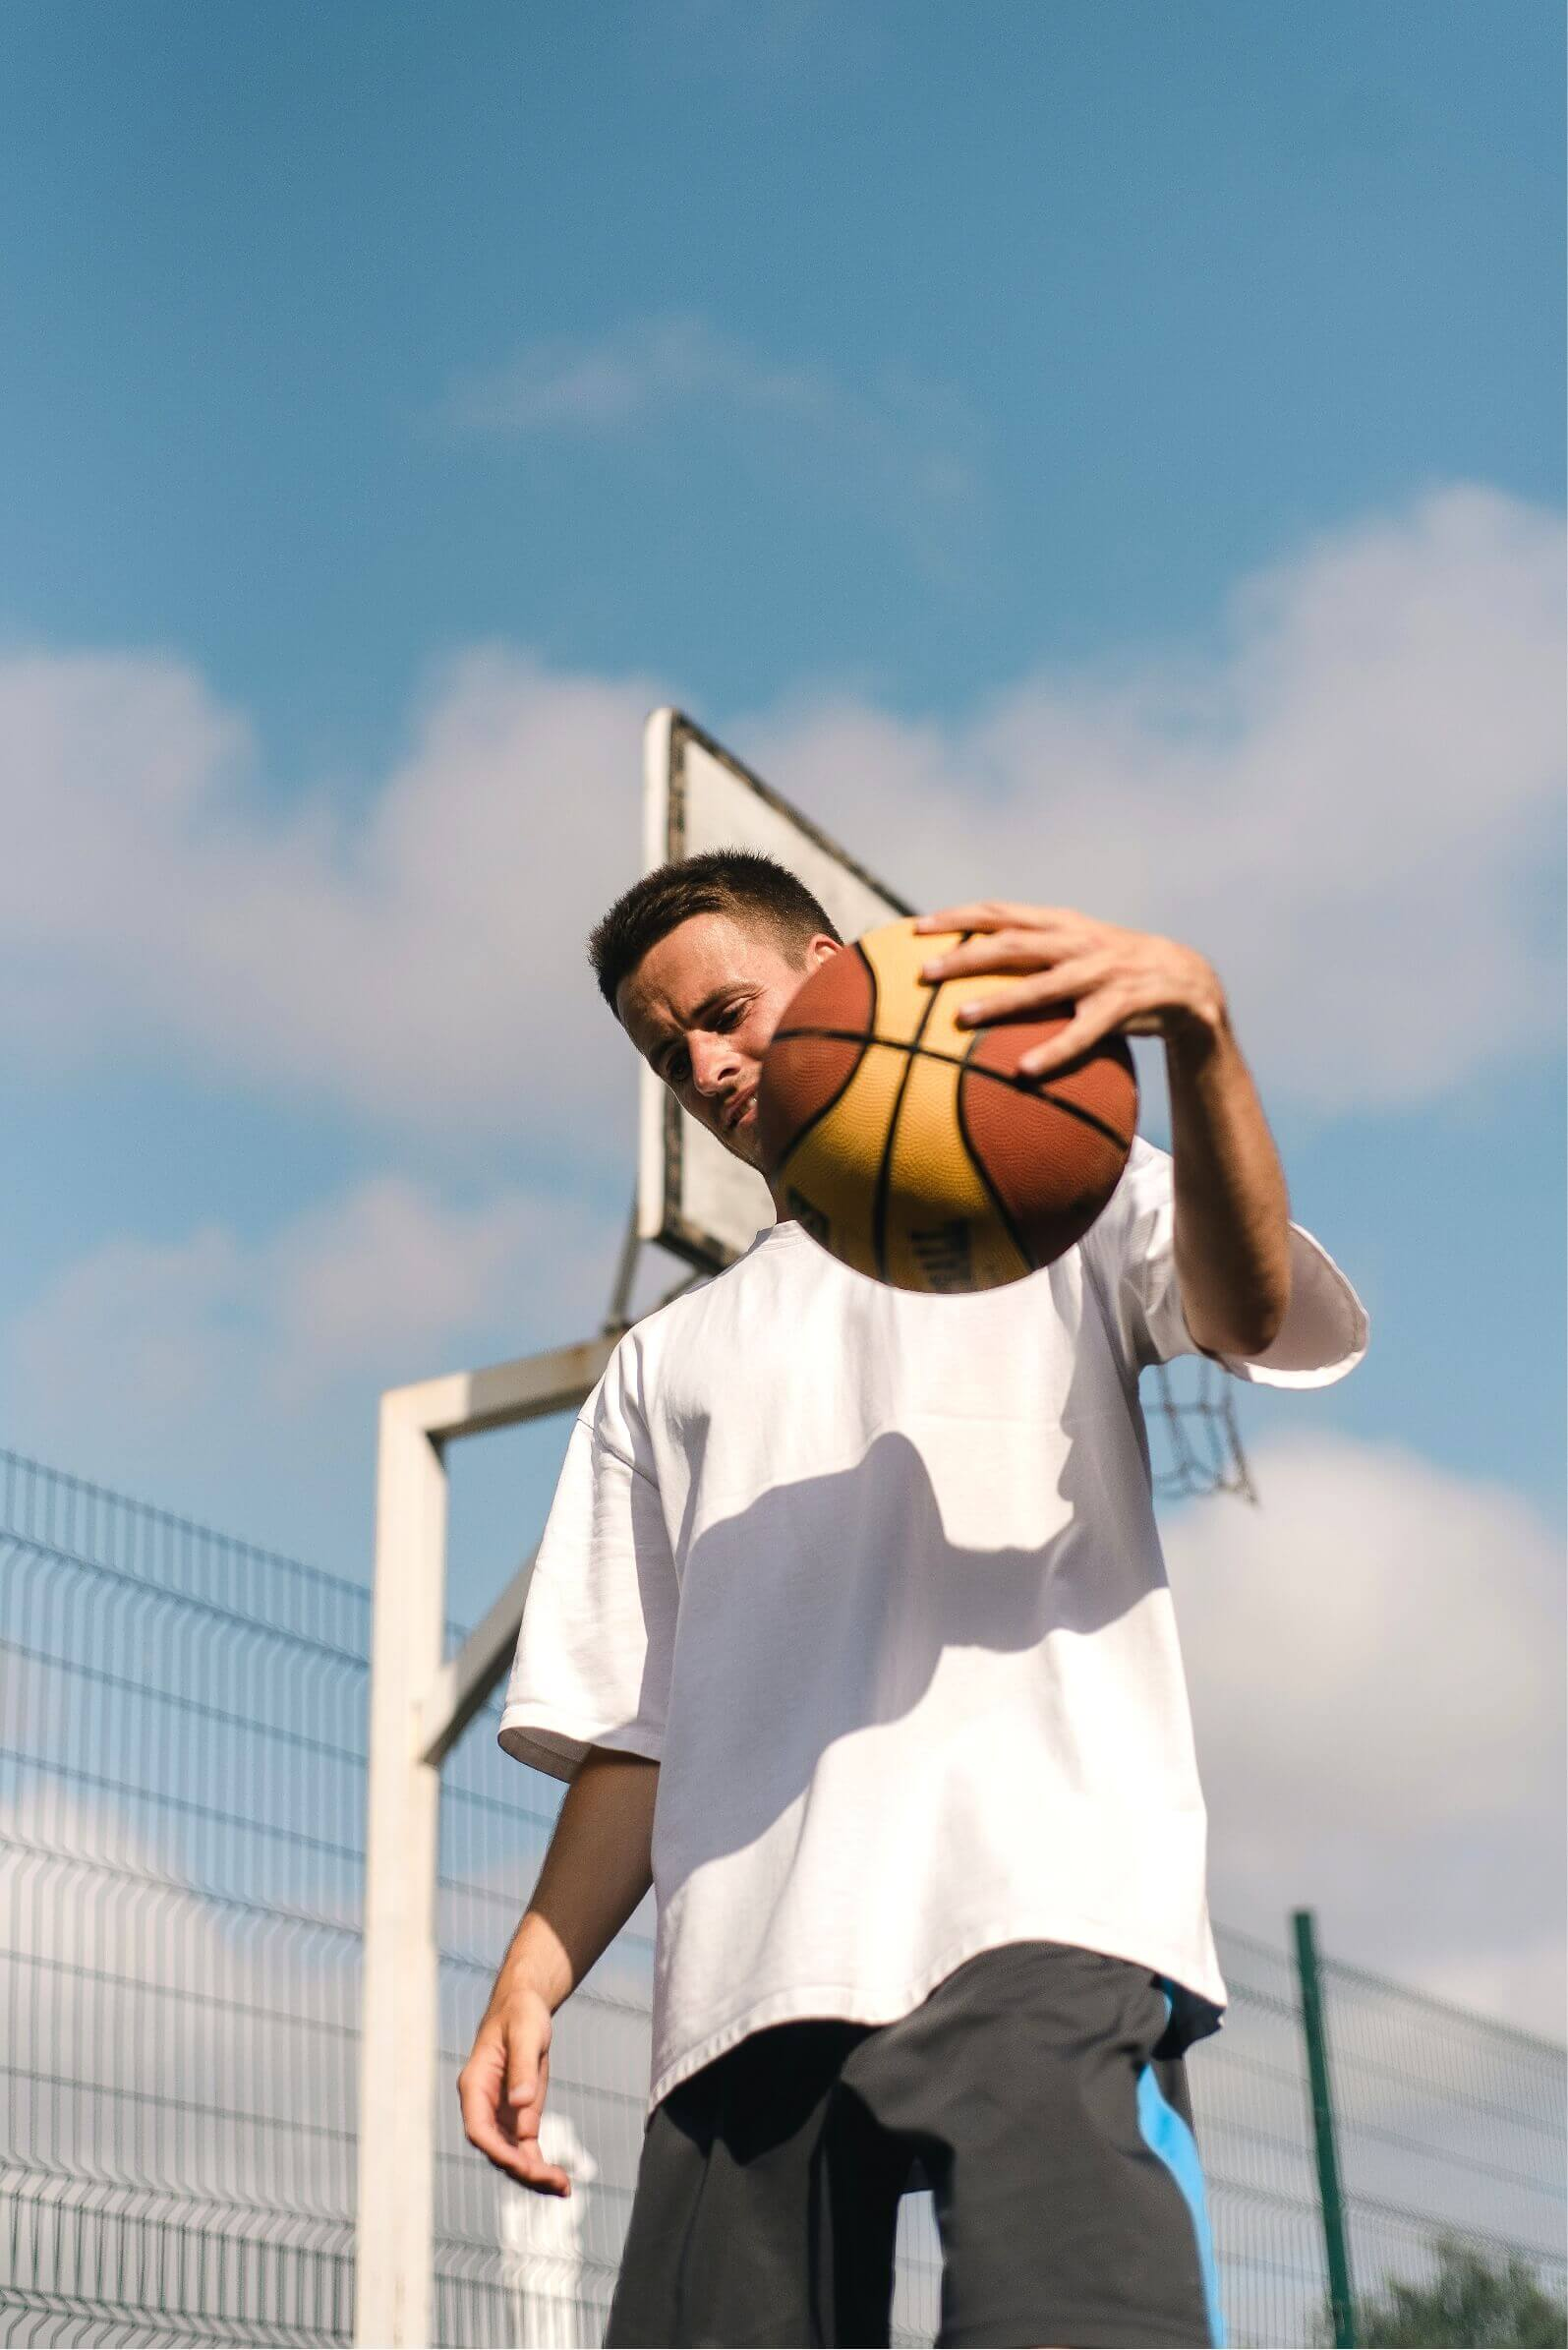 Teenage playing basketball